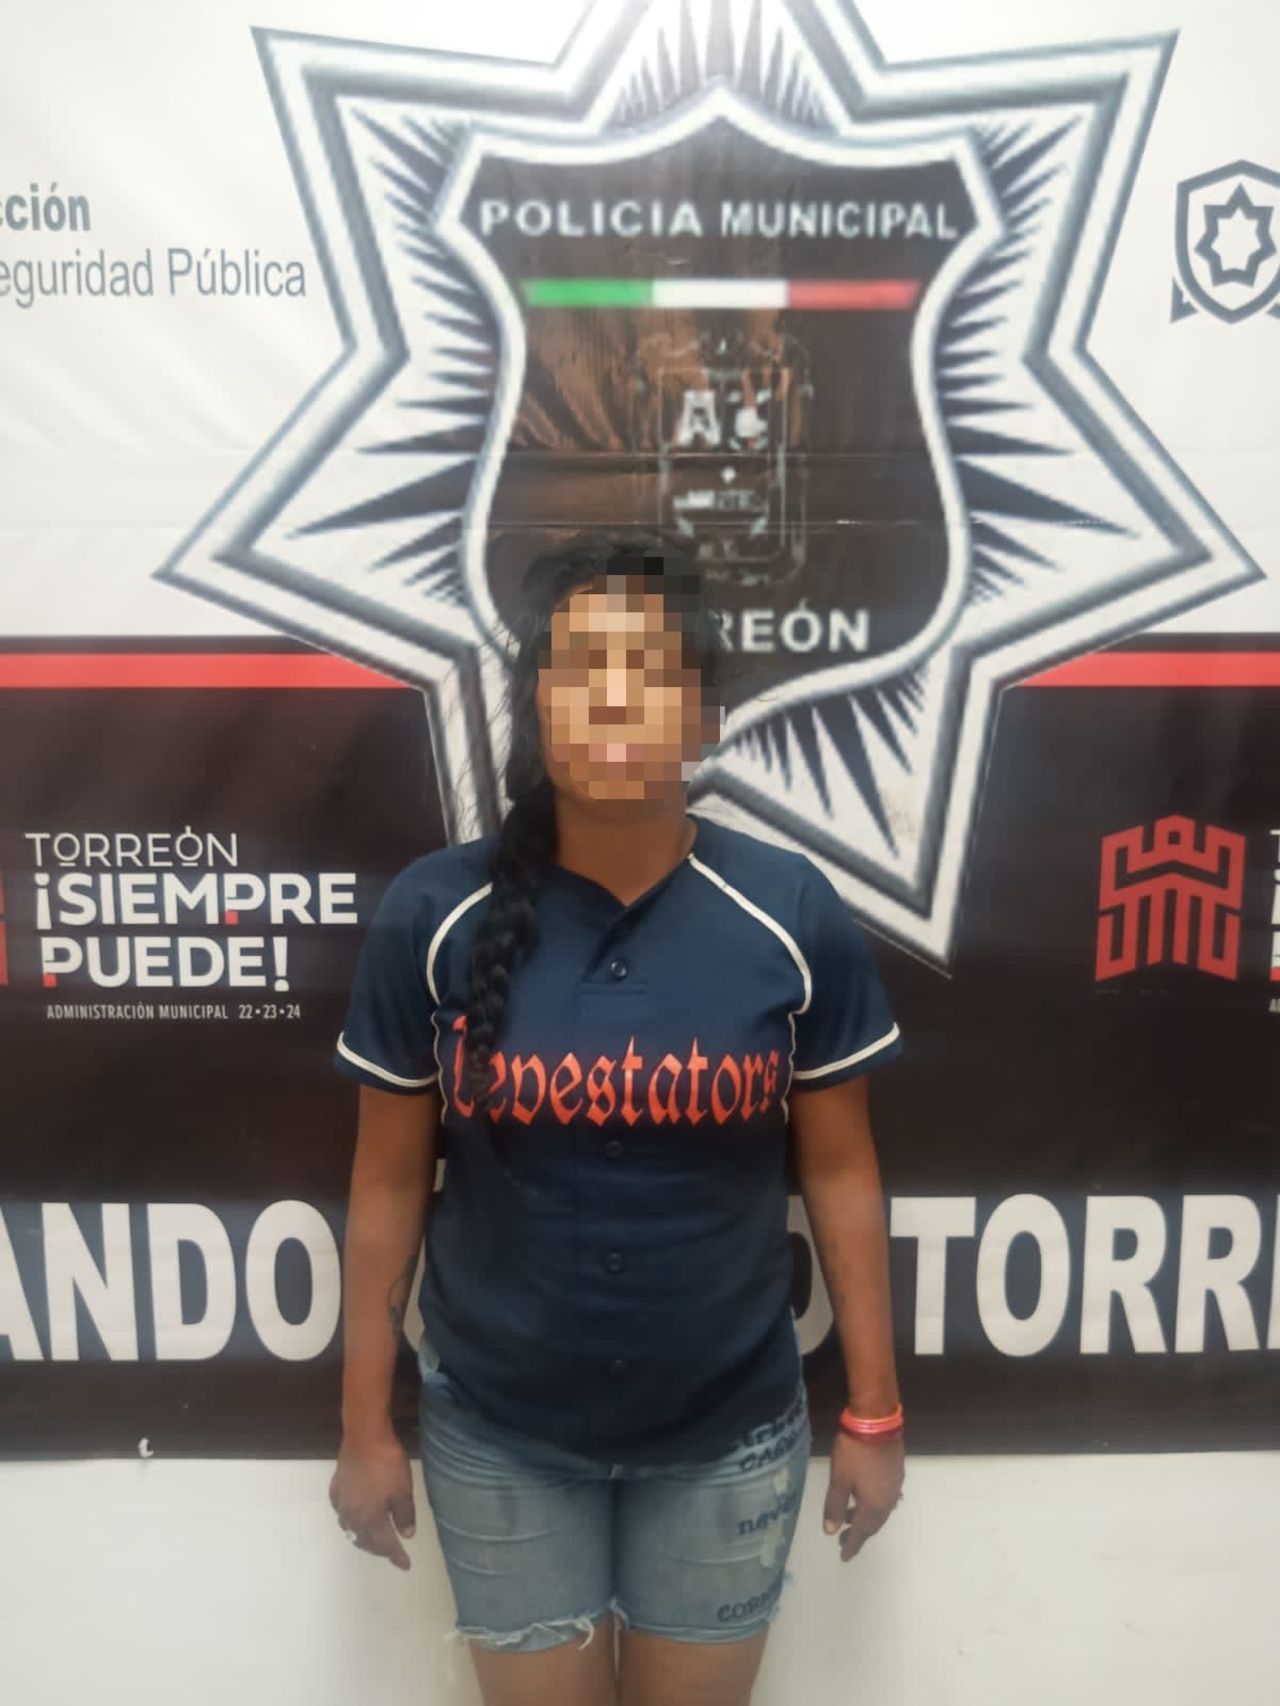 La mujer fue detenida por elementos de la Dirección de Seguridad Pública de la ciudad de Torreón.